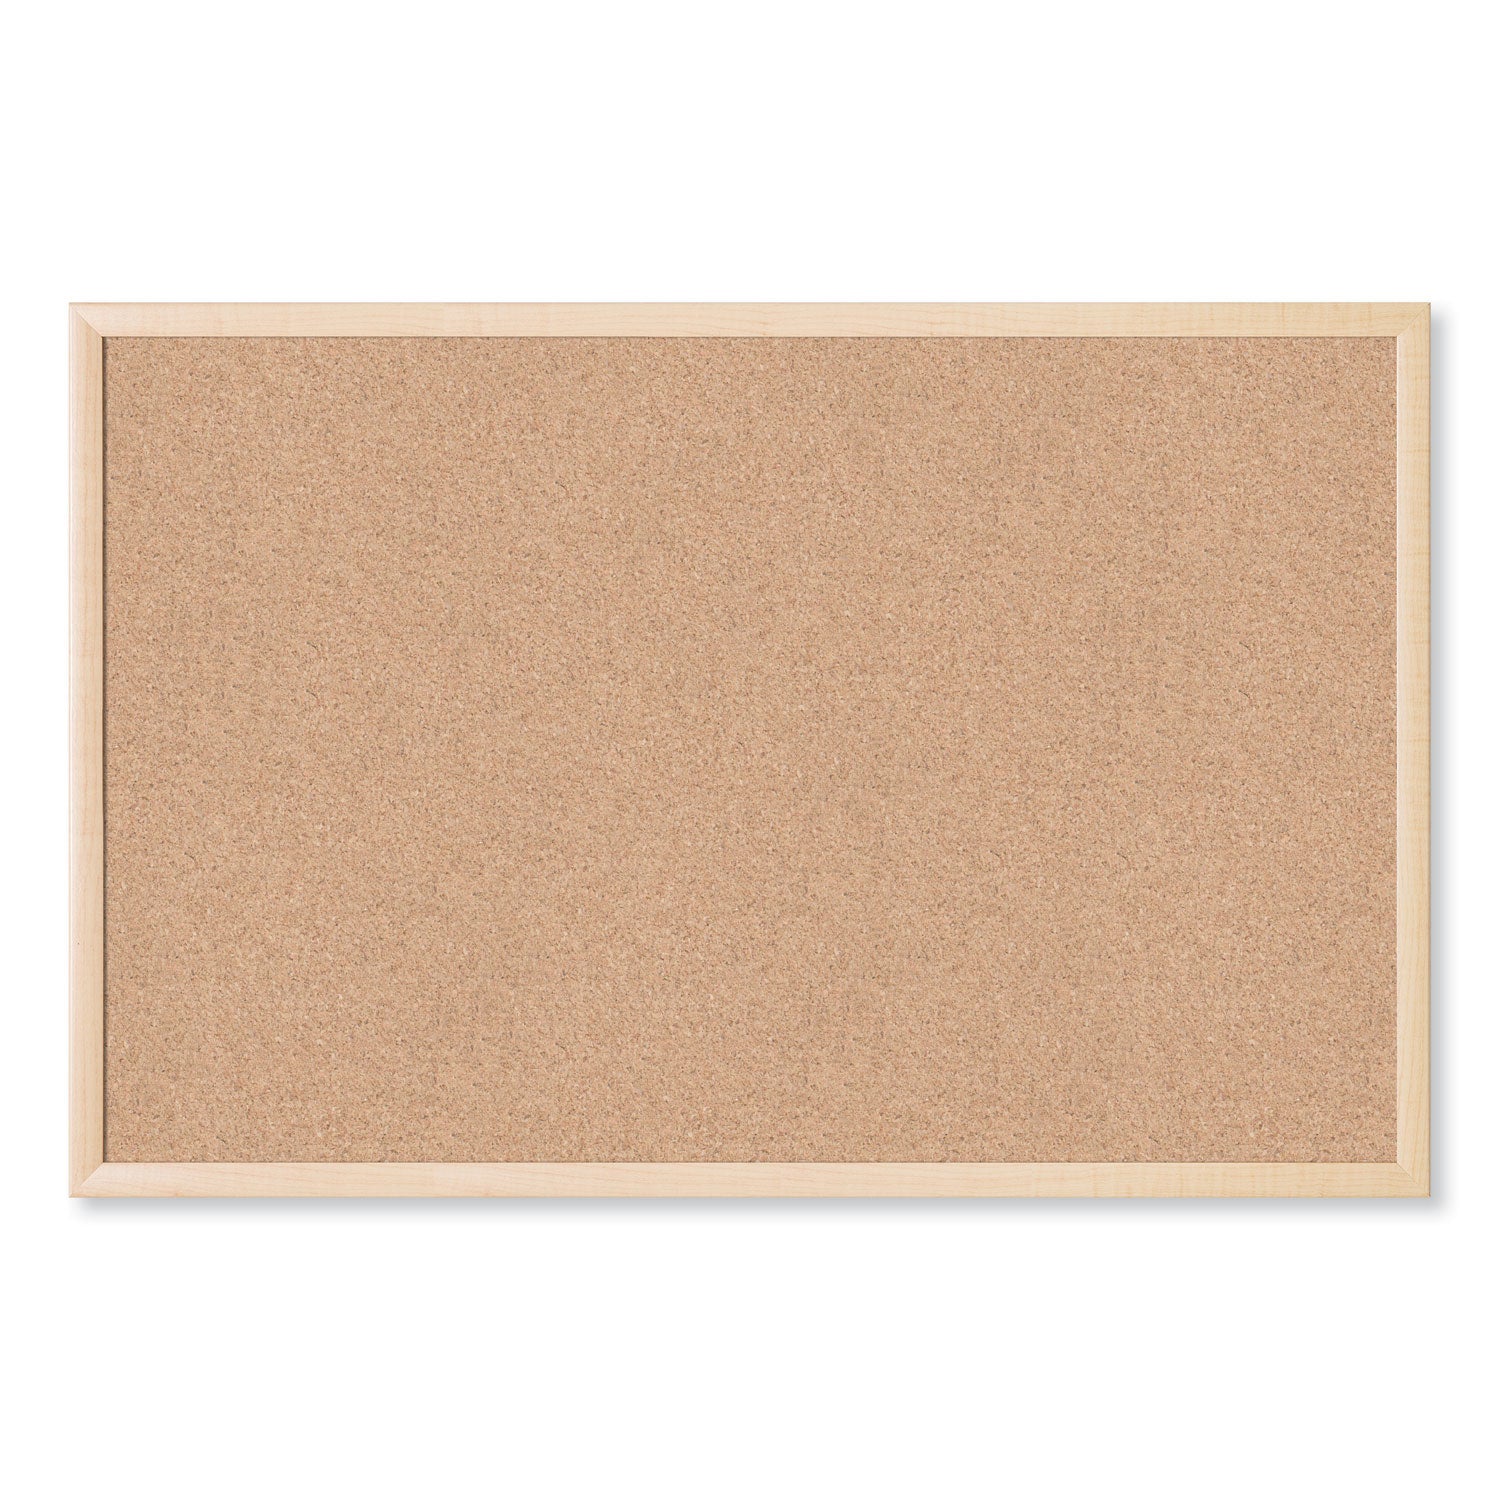 cork-bulletin-board-35-x-23-tan-surface-birch-wood-frame_ubr266u0001 - 1